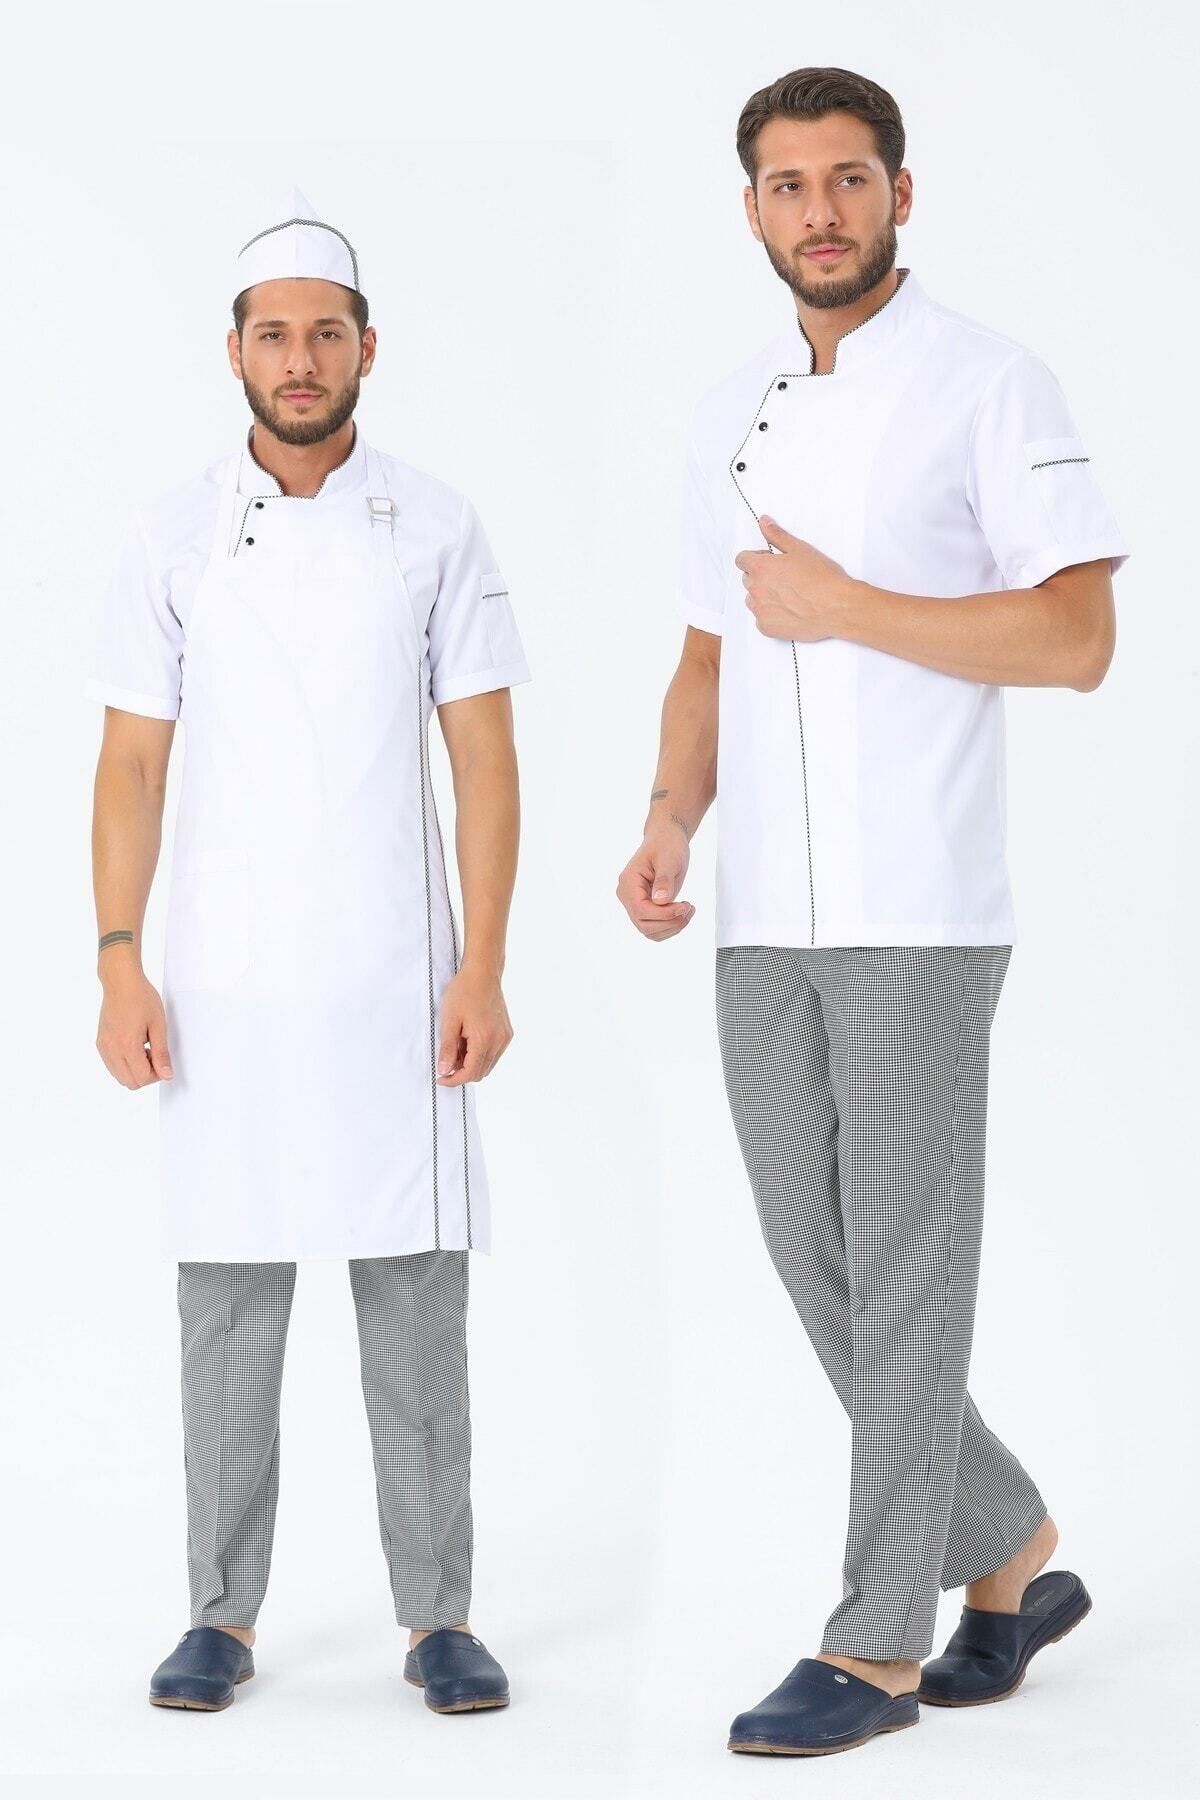 TIPTEKS Erkek Kısa Kol Beyaz - Pötikare Aşçı Ceket + Aşçı Pantolon + Askılı Önlük Ve Kep Dörtlü Takım